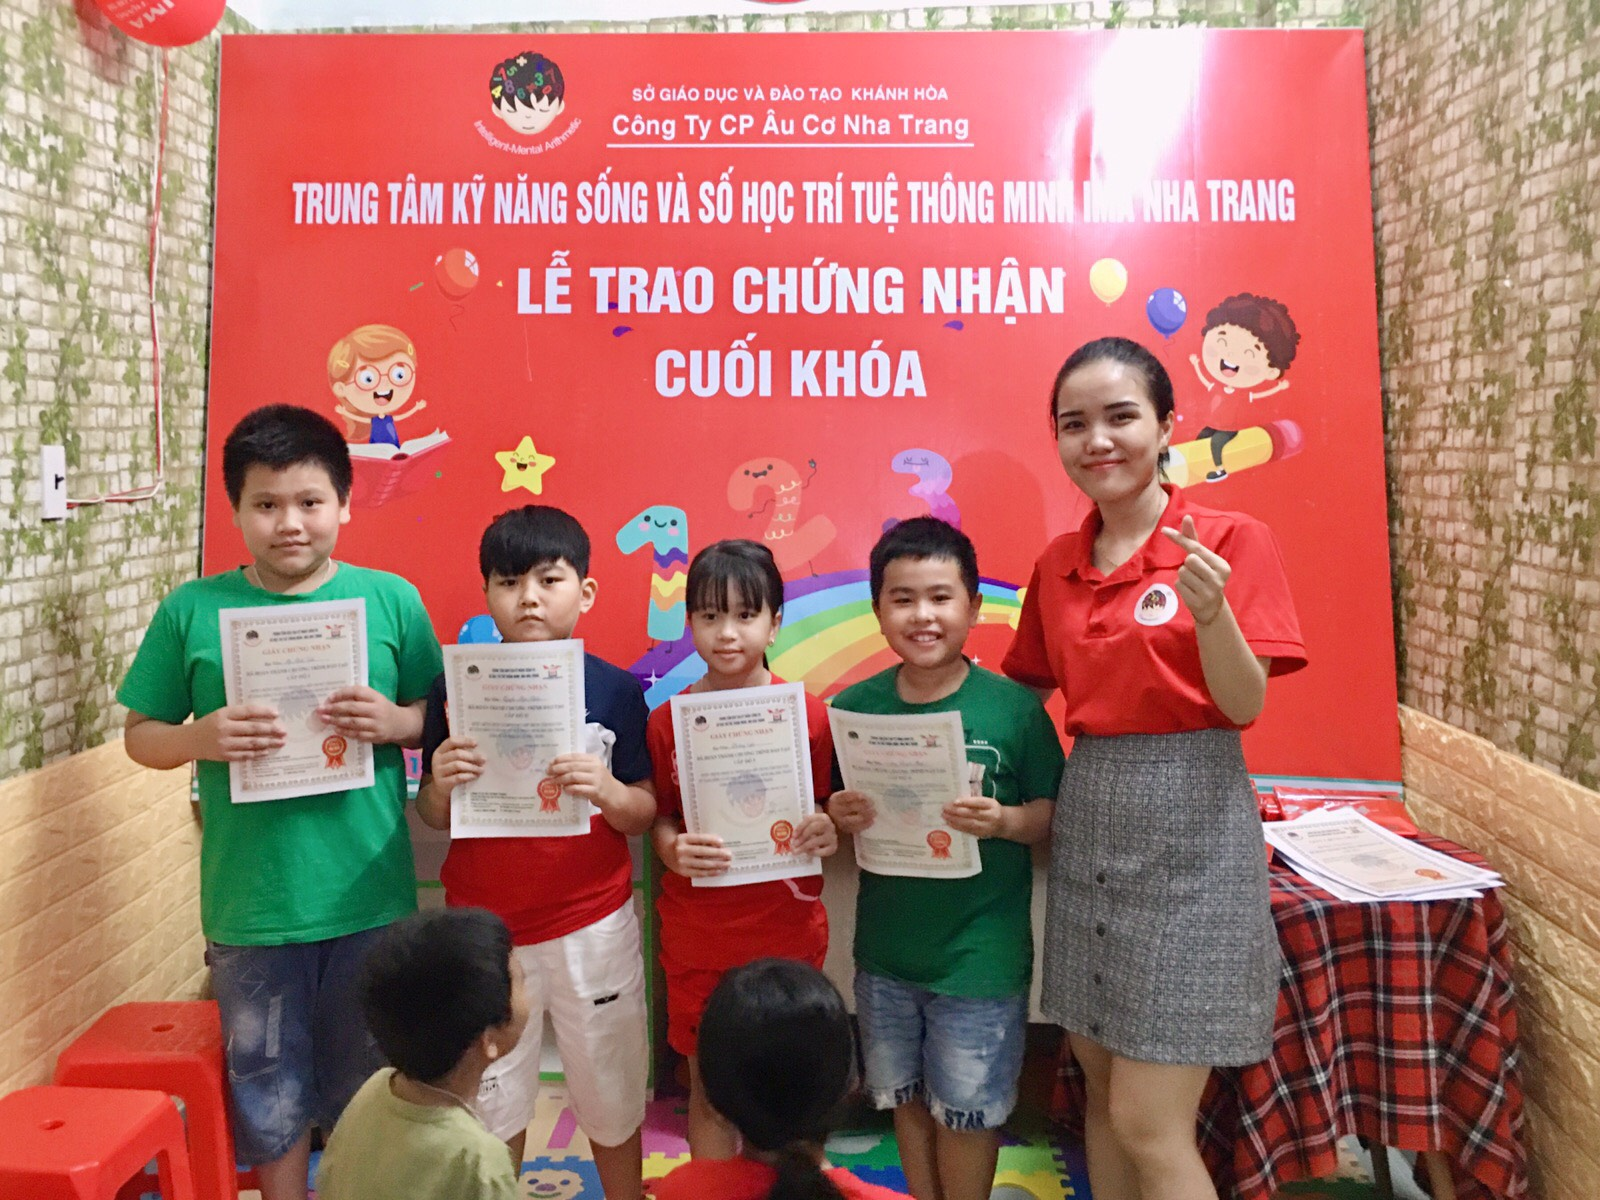 Lễ trao giấy chứng nhận cuối khóa cho các bé theo học tại IMA Nha Trang.